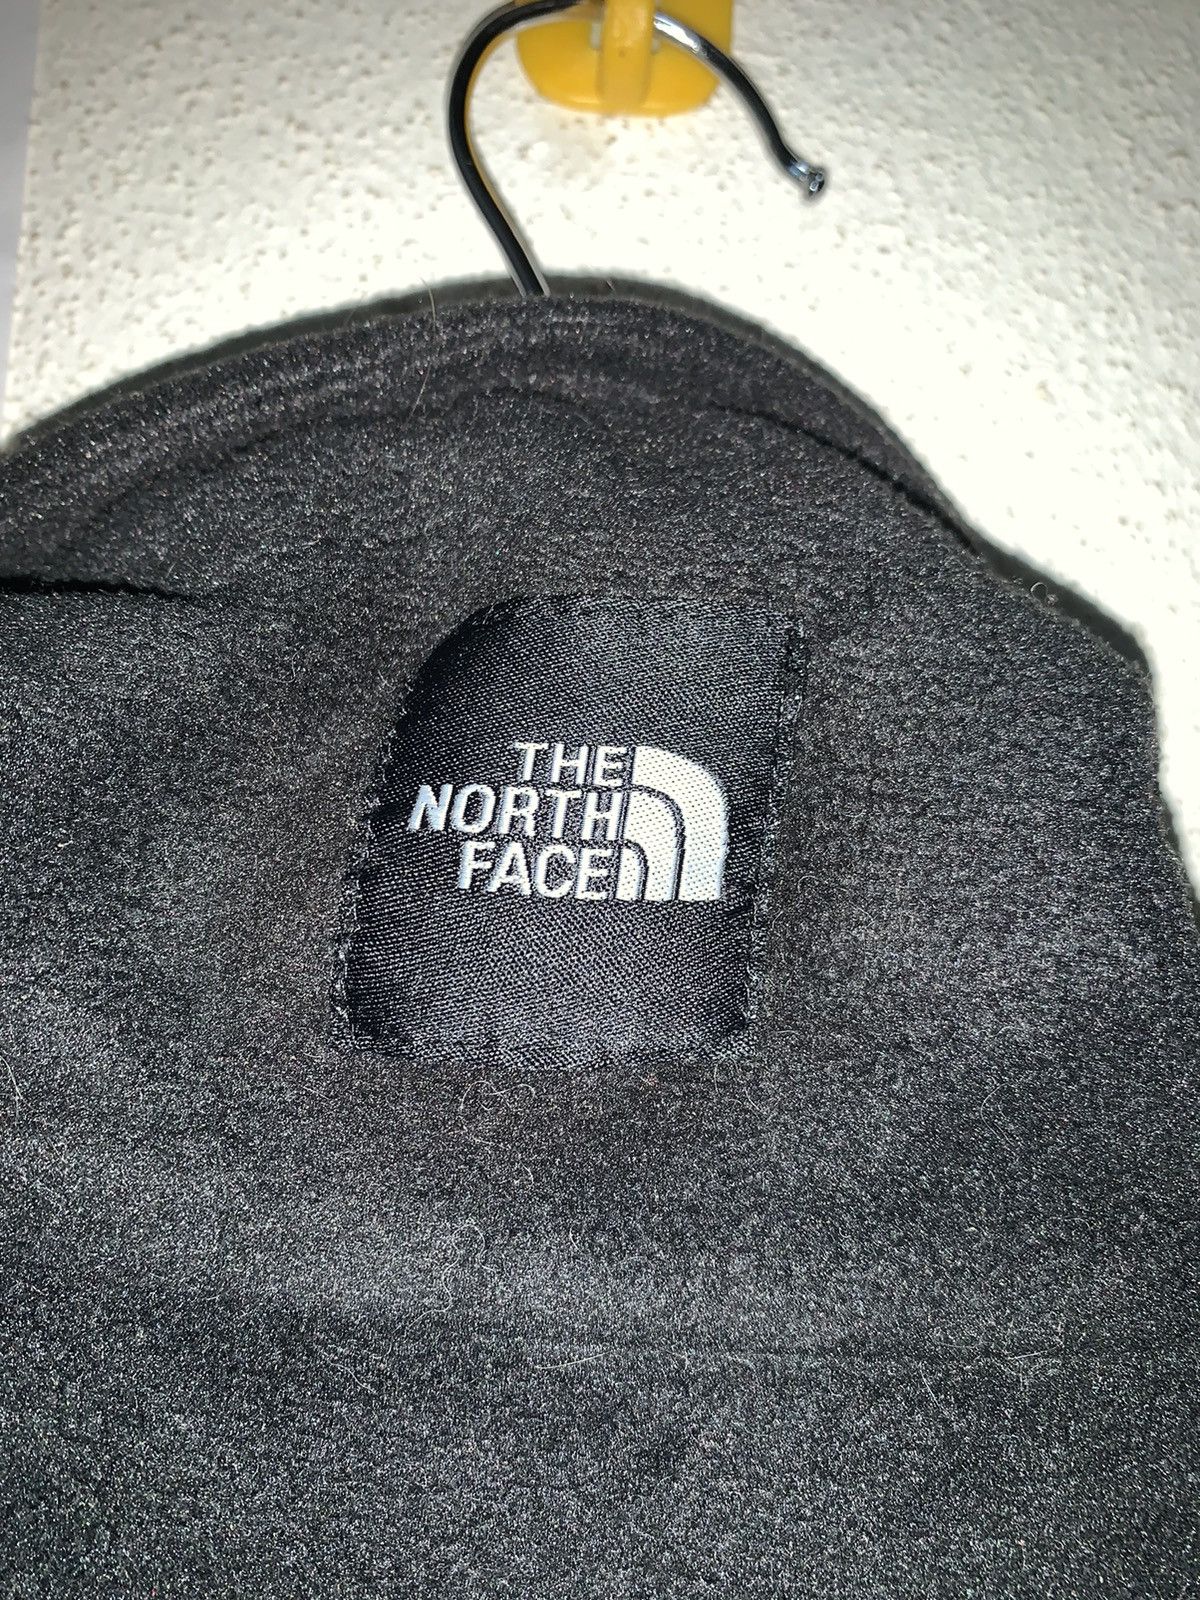 The North Face Fleece Polartec Jacket - 12